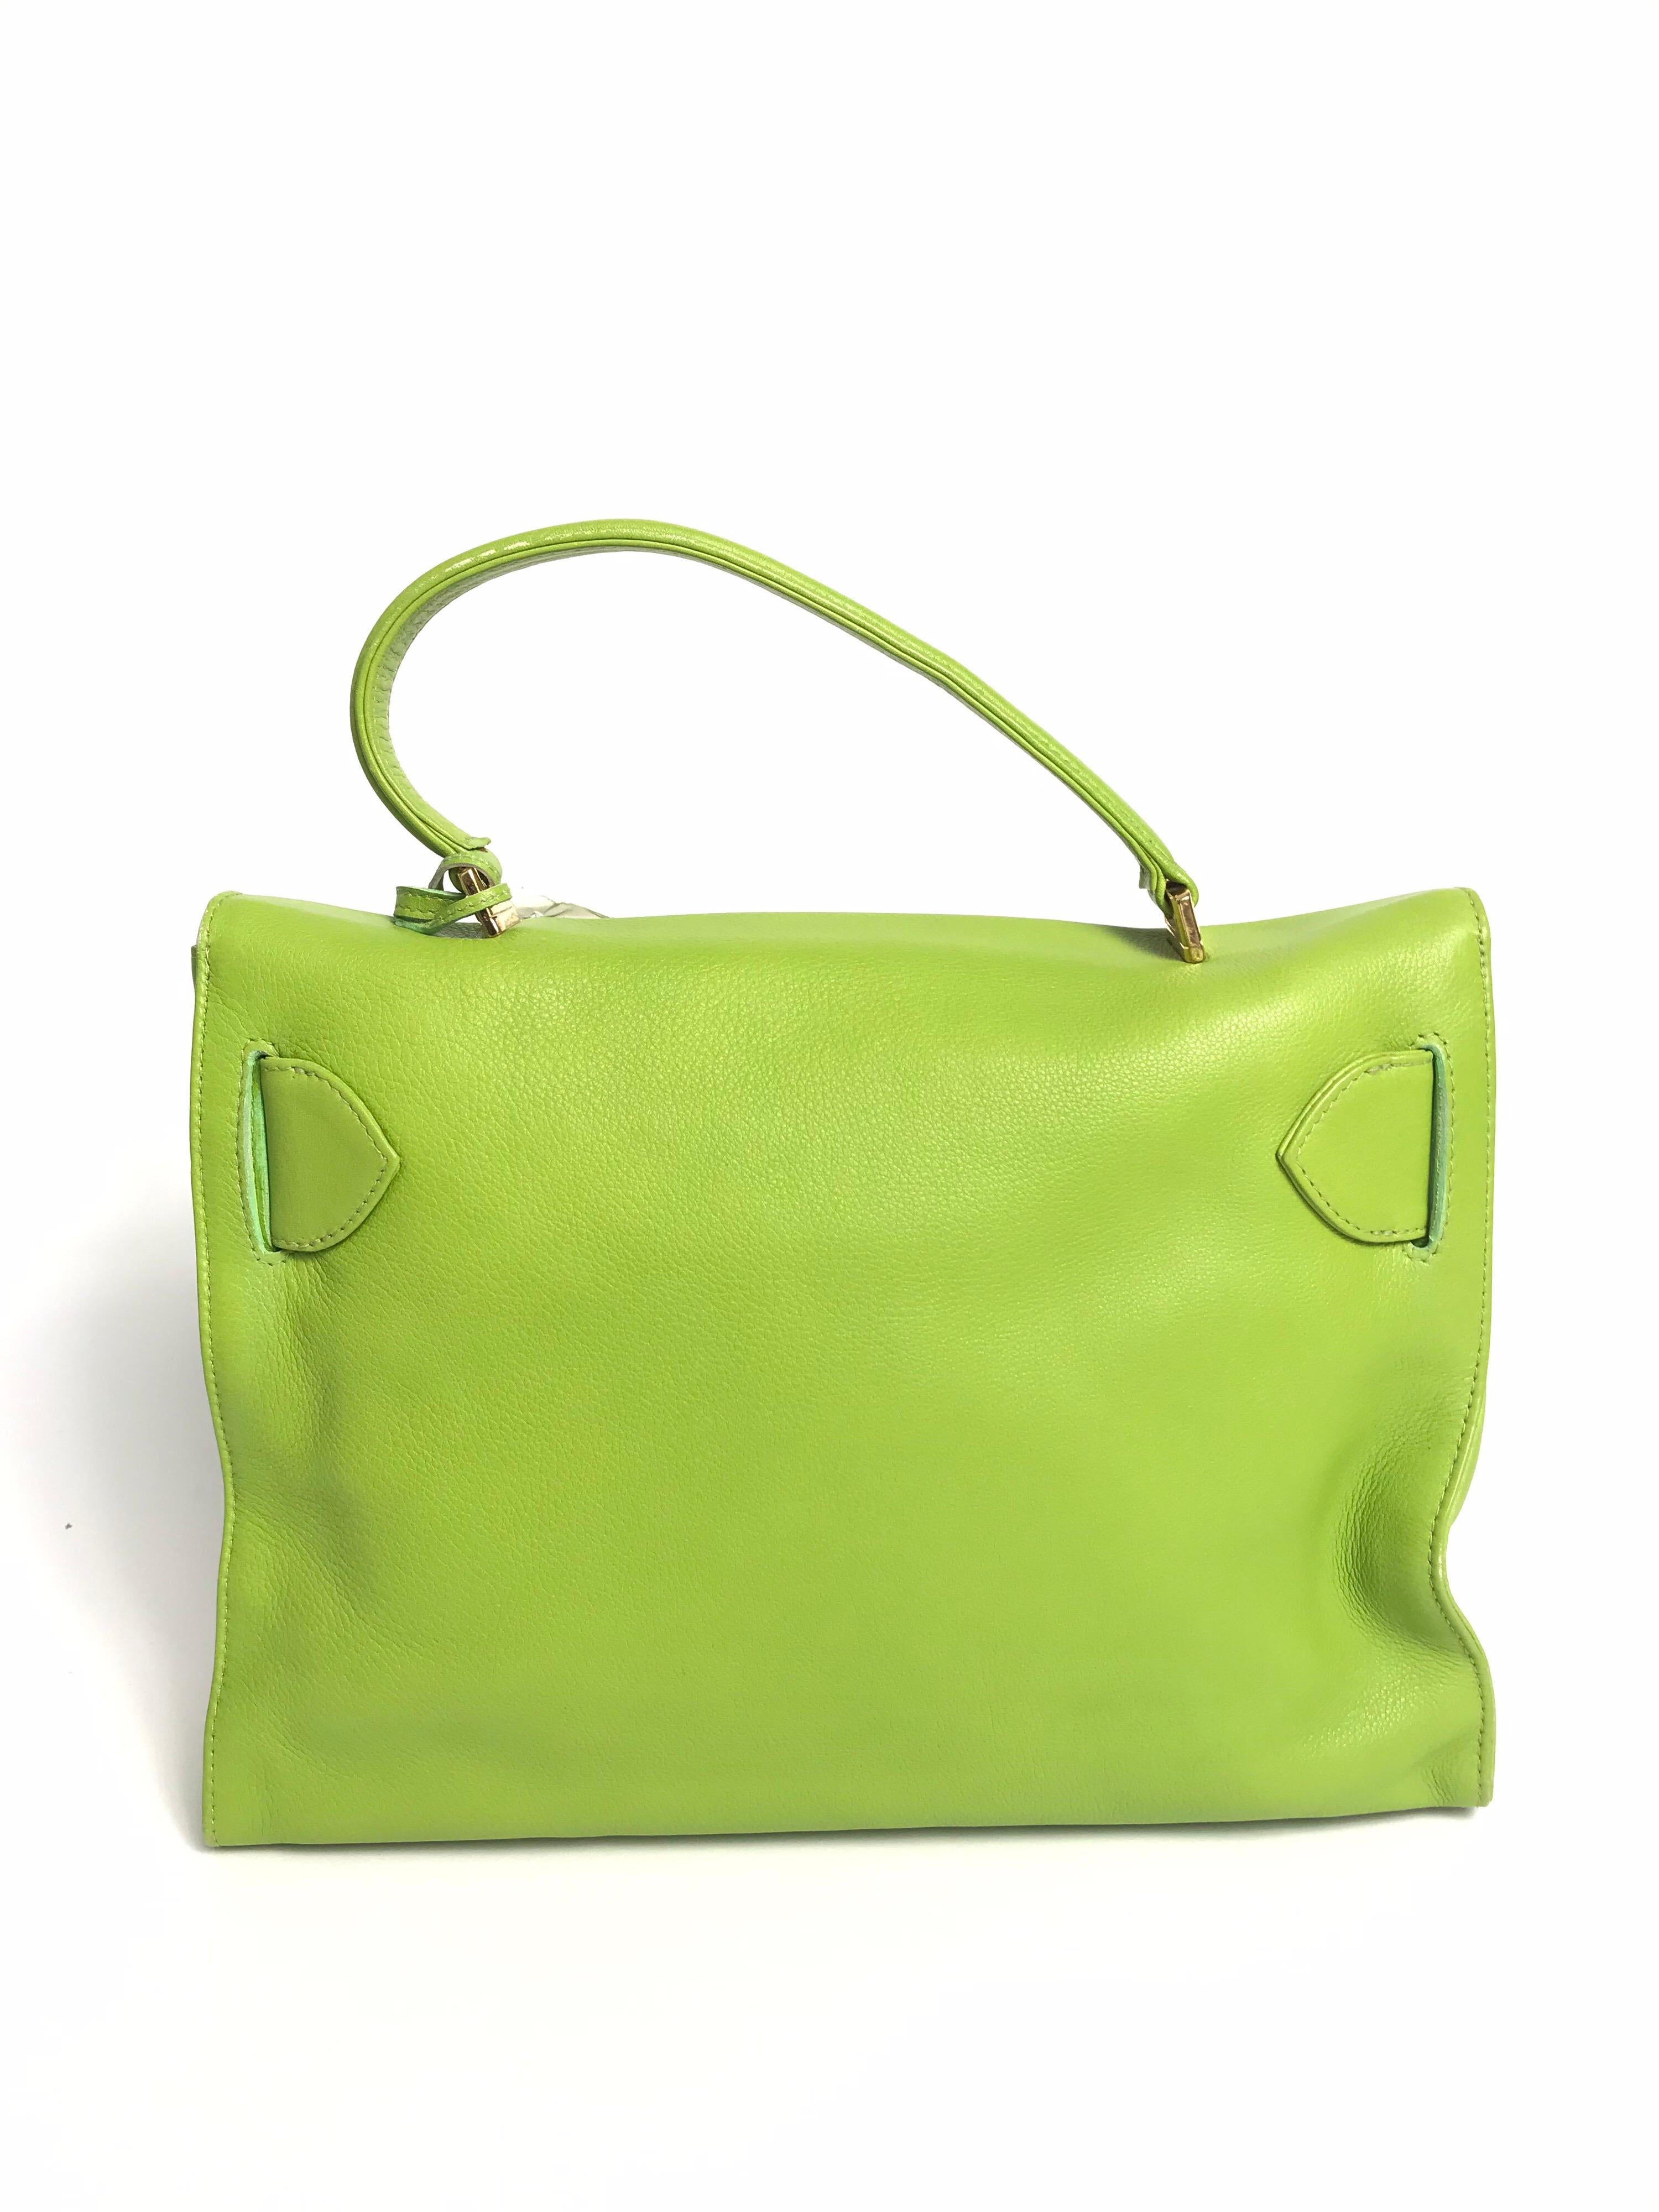 green versace purse